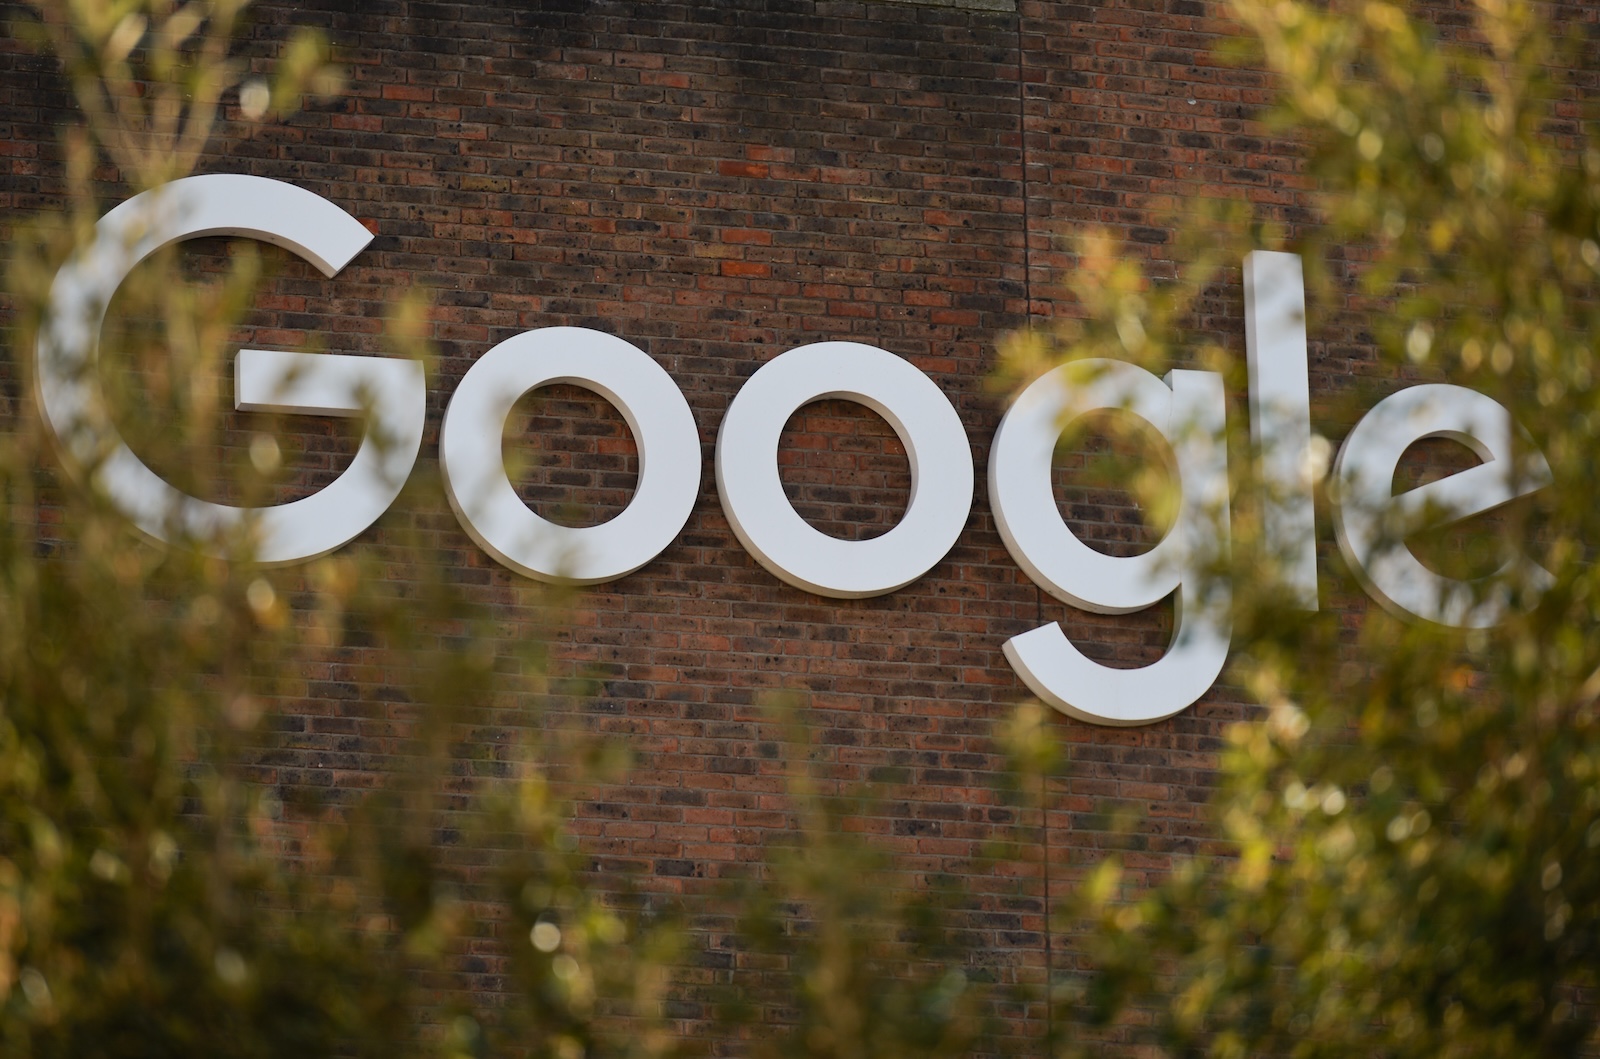 28 名 Google 員工因抗議公司與以色列政府合作被解僱